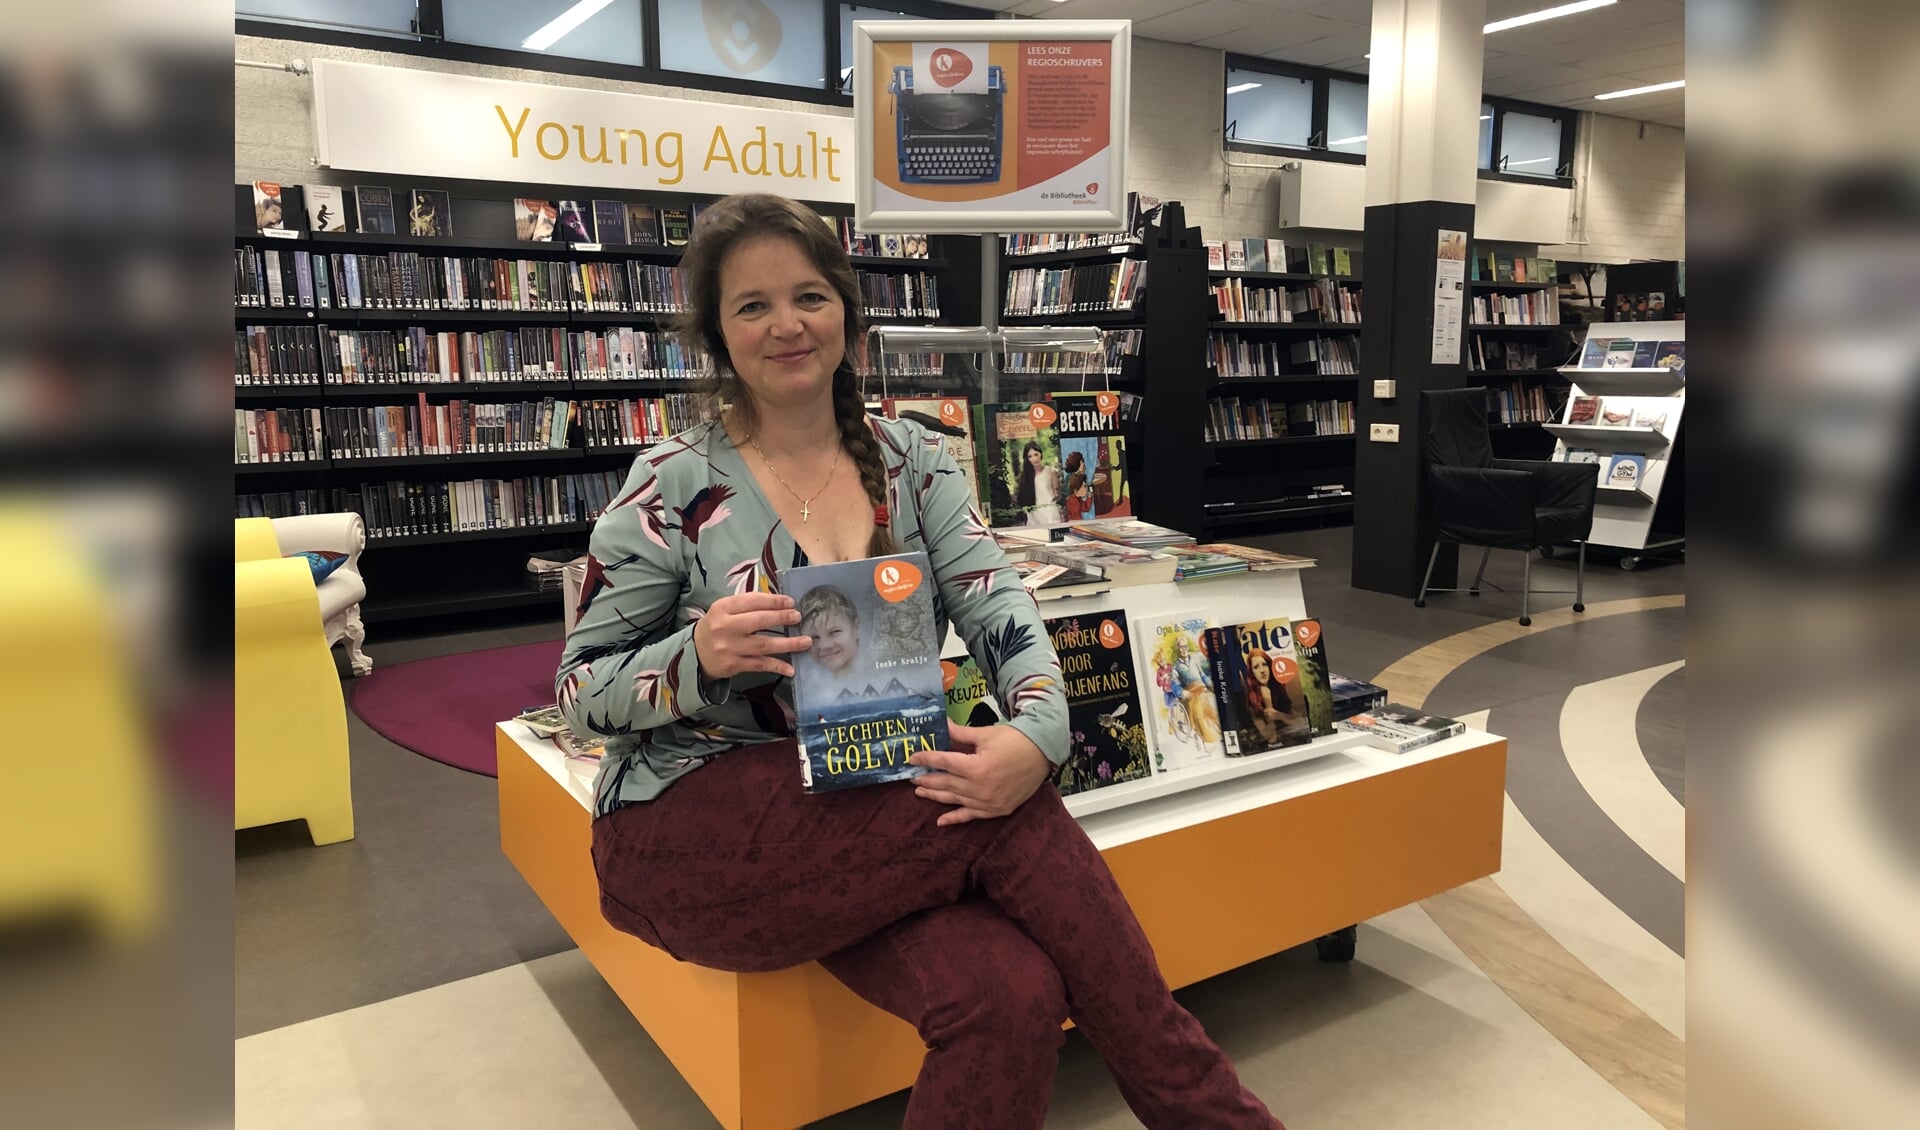 Met maar liefst 26 boeken voor kinderen van alle leeftijden siert Ineke Kraijo menig bibliotheekkast. Onlangs verscheen haar nieuwste boek 'Lieke turnt voor publiek'.